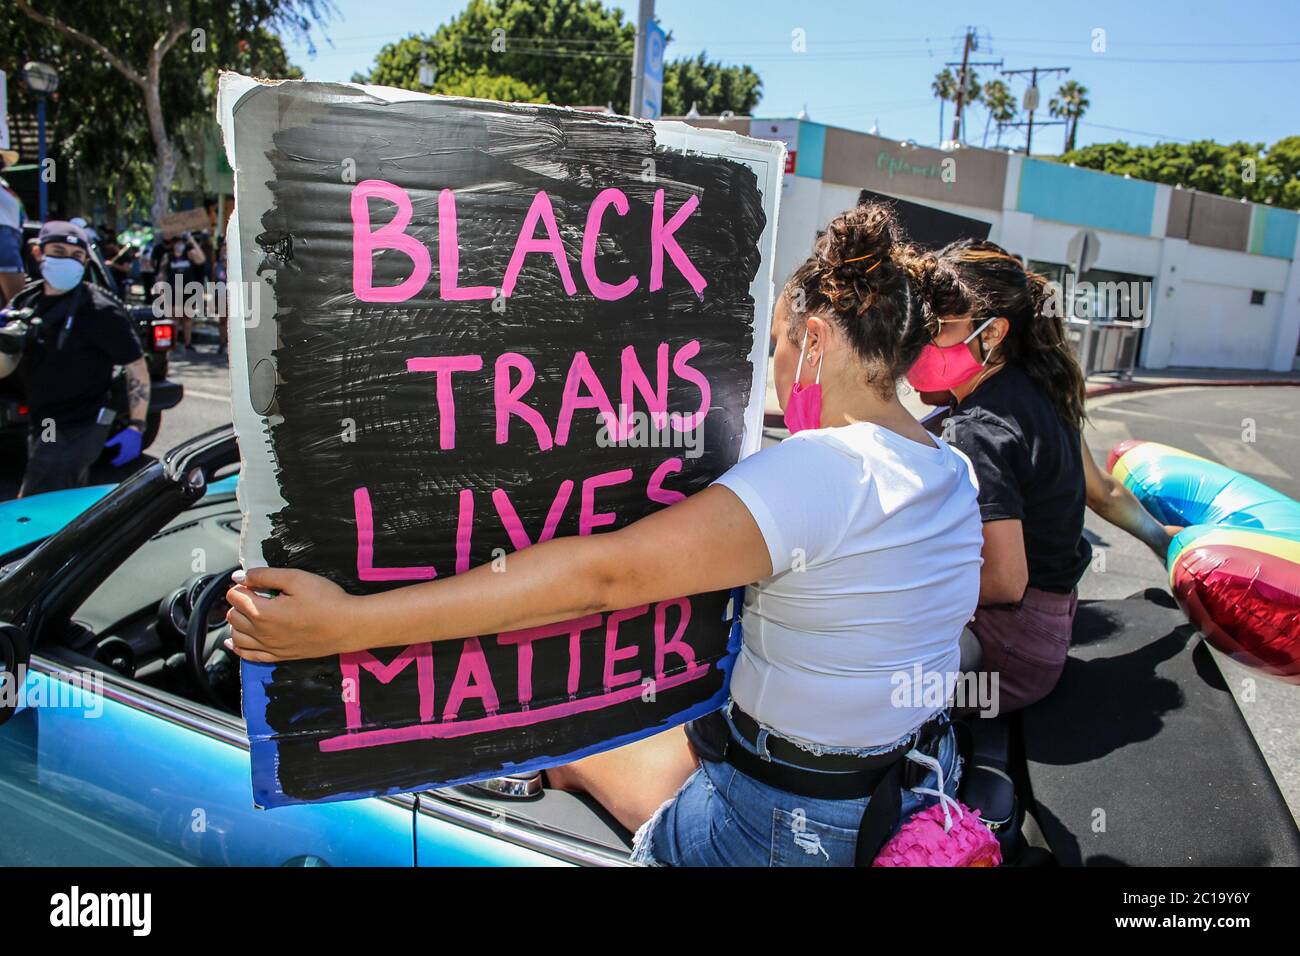 Los Angeles, Stati Uniti. 14 Giugno 2020. Un protester tiene un cartello che dice 'Black Trans Lives Matter' durante la marcia. Migliaia di manifestanti si sono incontrati domenica a marzo a Hollywood e a West Hollywood in una marcia di solidarietà anti-razzismo. Il giorno originariamente era destinato a tenere la Parata DI LA Pride, ma la Parata di Pride era stata precedentemente annullata a causa della pandemia COVID-19. Gli organizzatori hanno detto all'inizio di questo mese che avrebbero organizzato una marcia in solidarietà con la questione Black Lives e contro la brutalità e l'oppressione della polizia. Credit: SOPA Images Limited/Alamy Live News Foto Stock